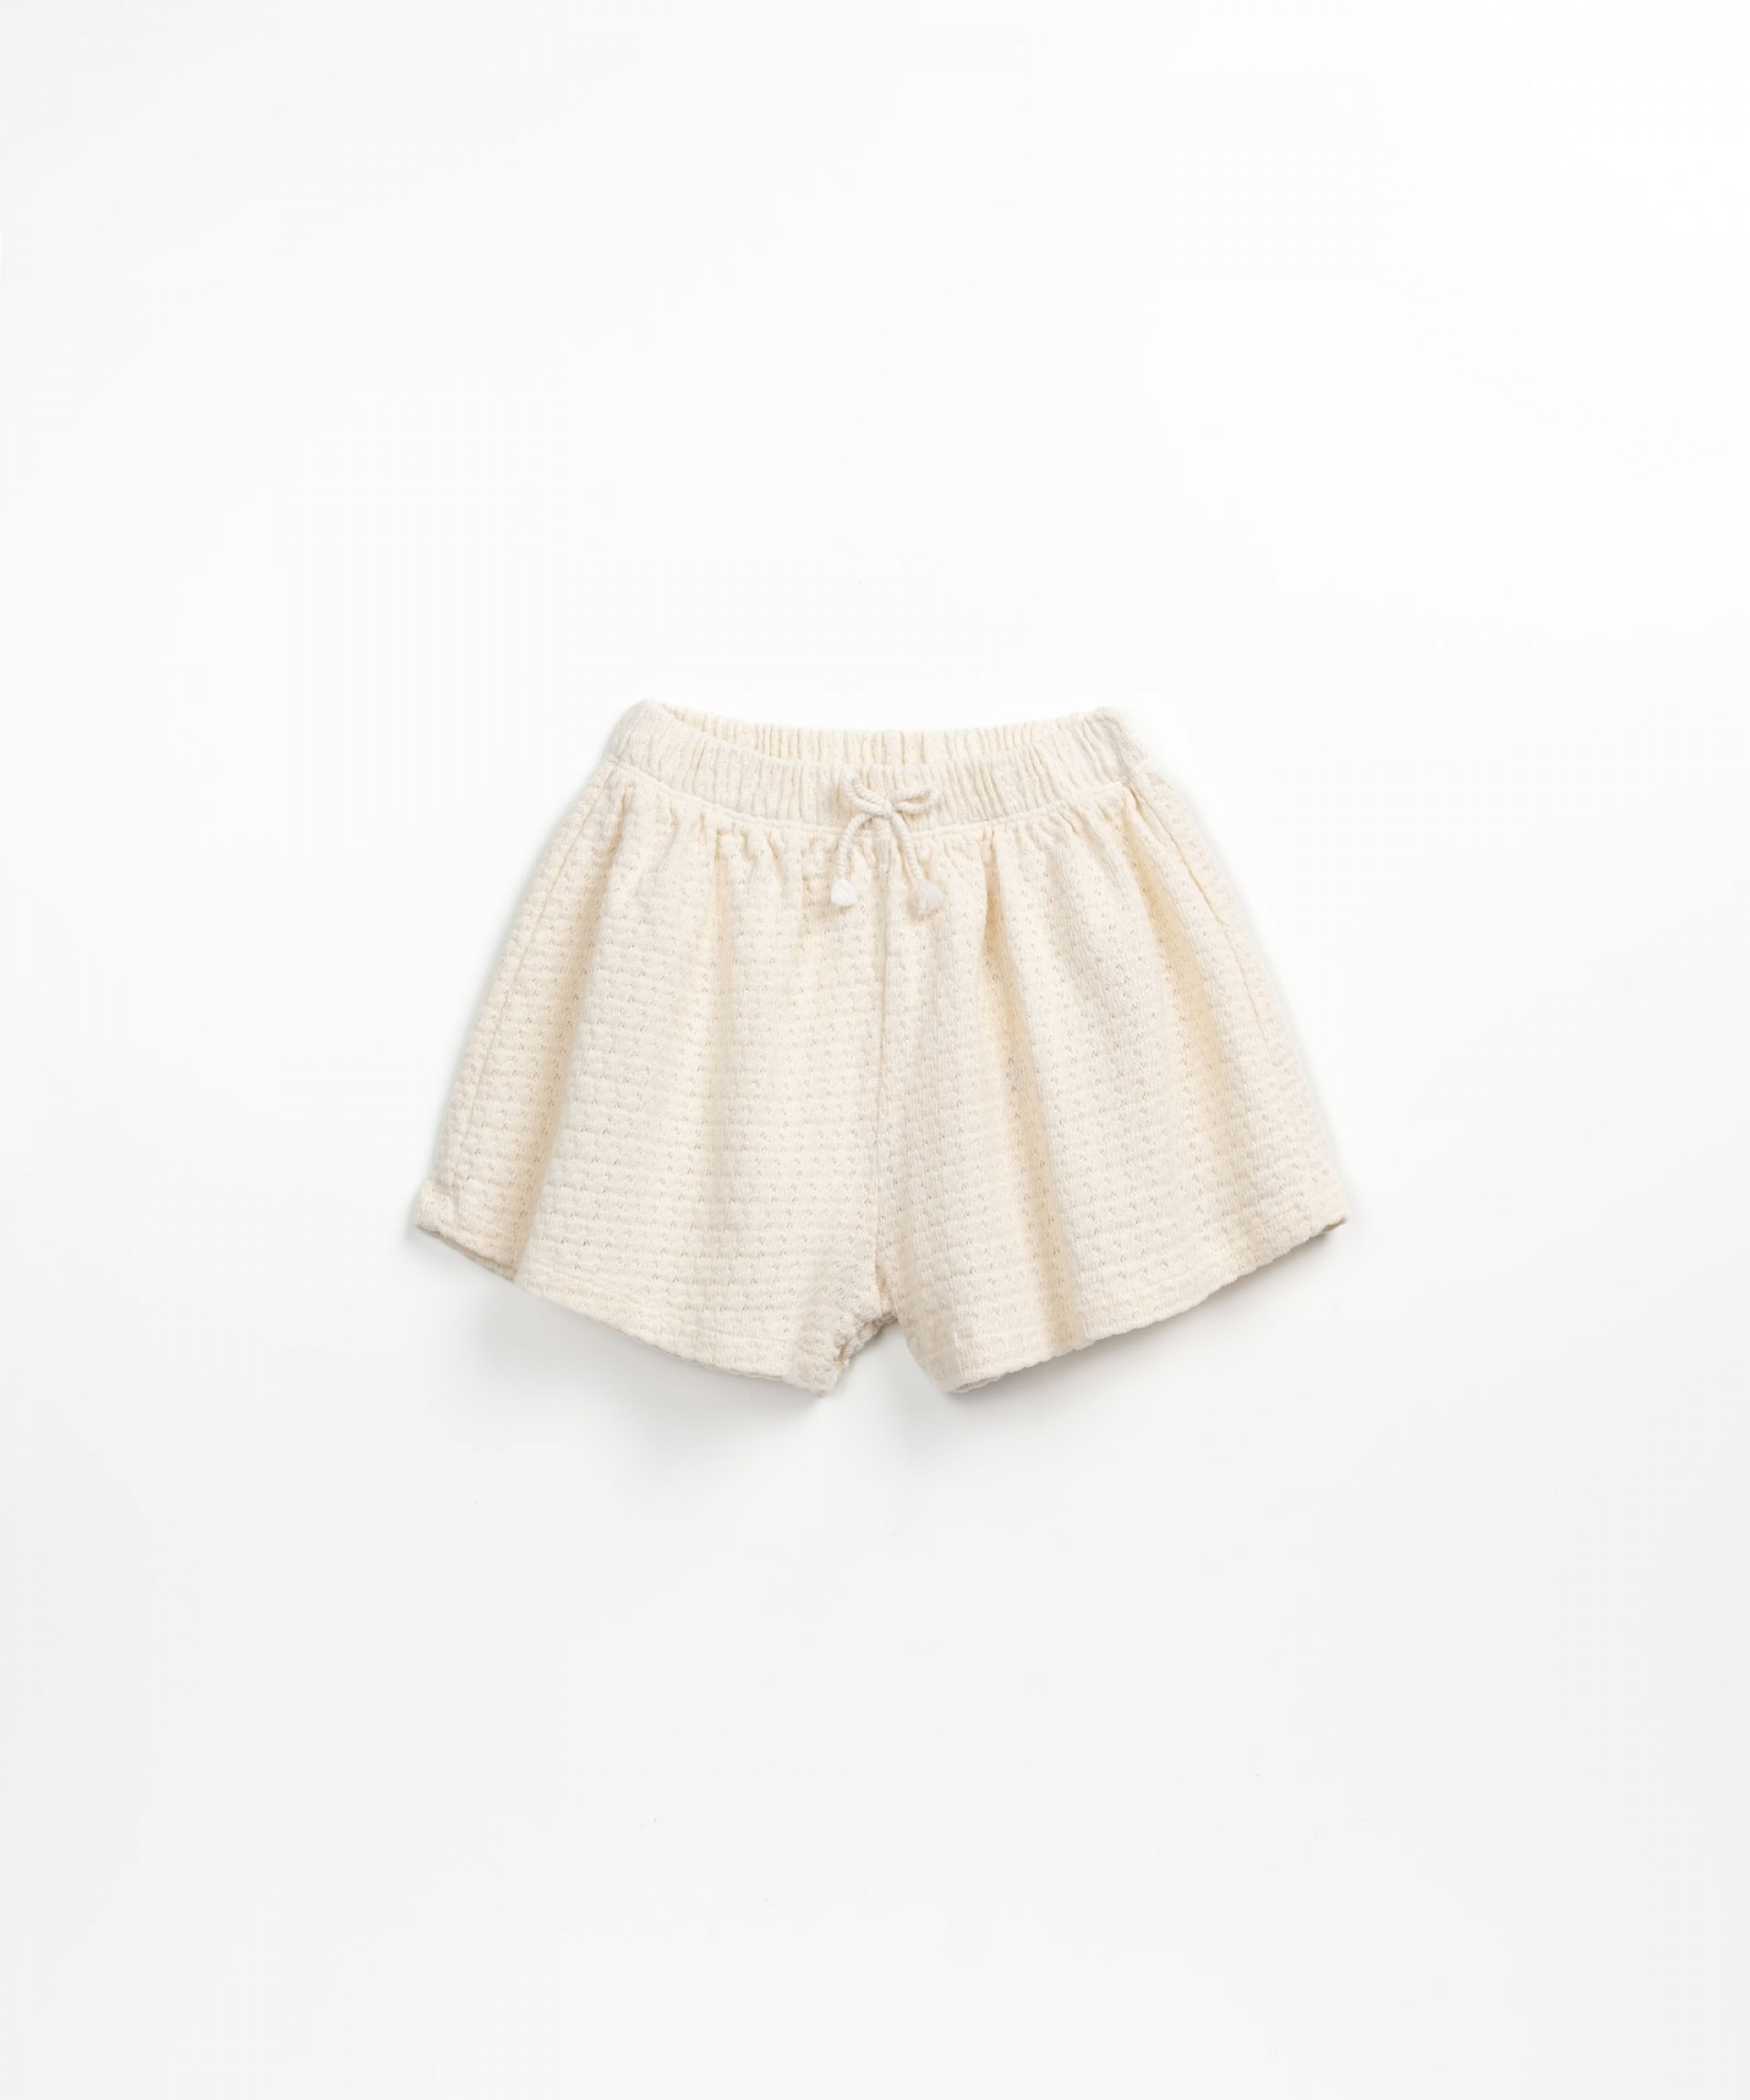 Pantaloncini in cotone organico | Textile Art